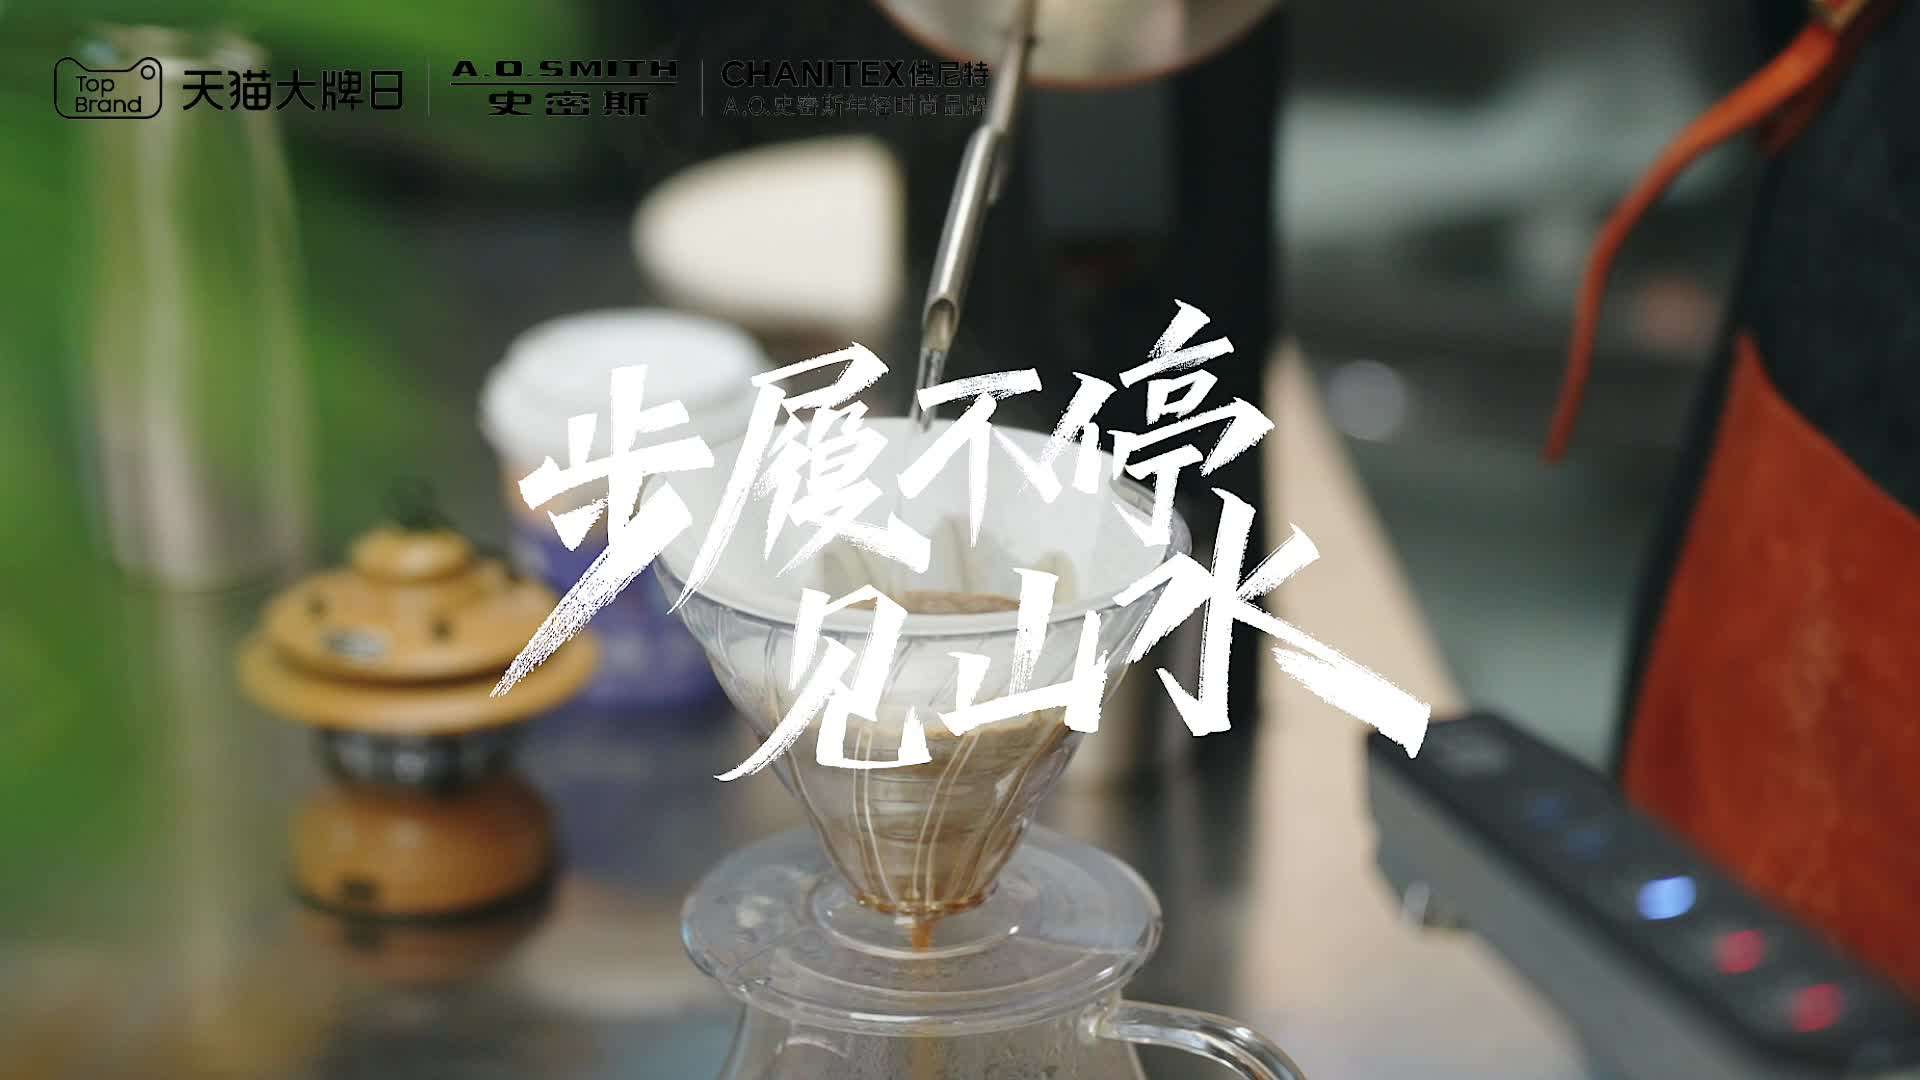 史密斯大牌日-联名南京网红咖啡店aiboo coffee活动